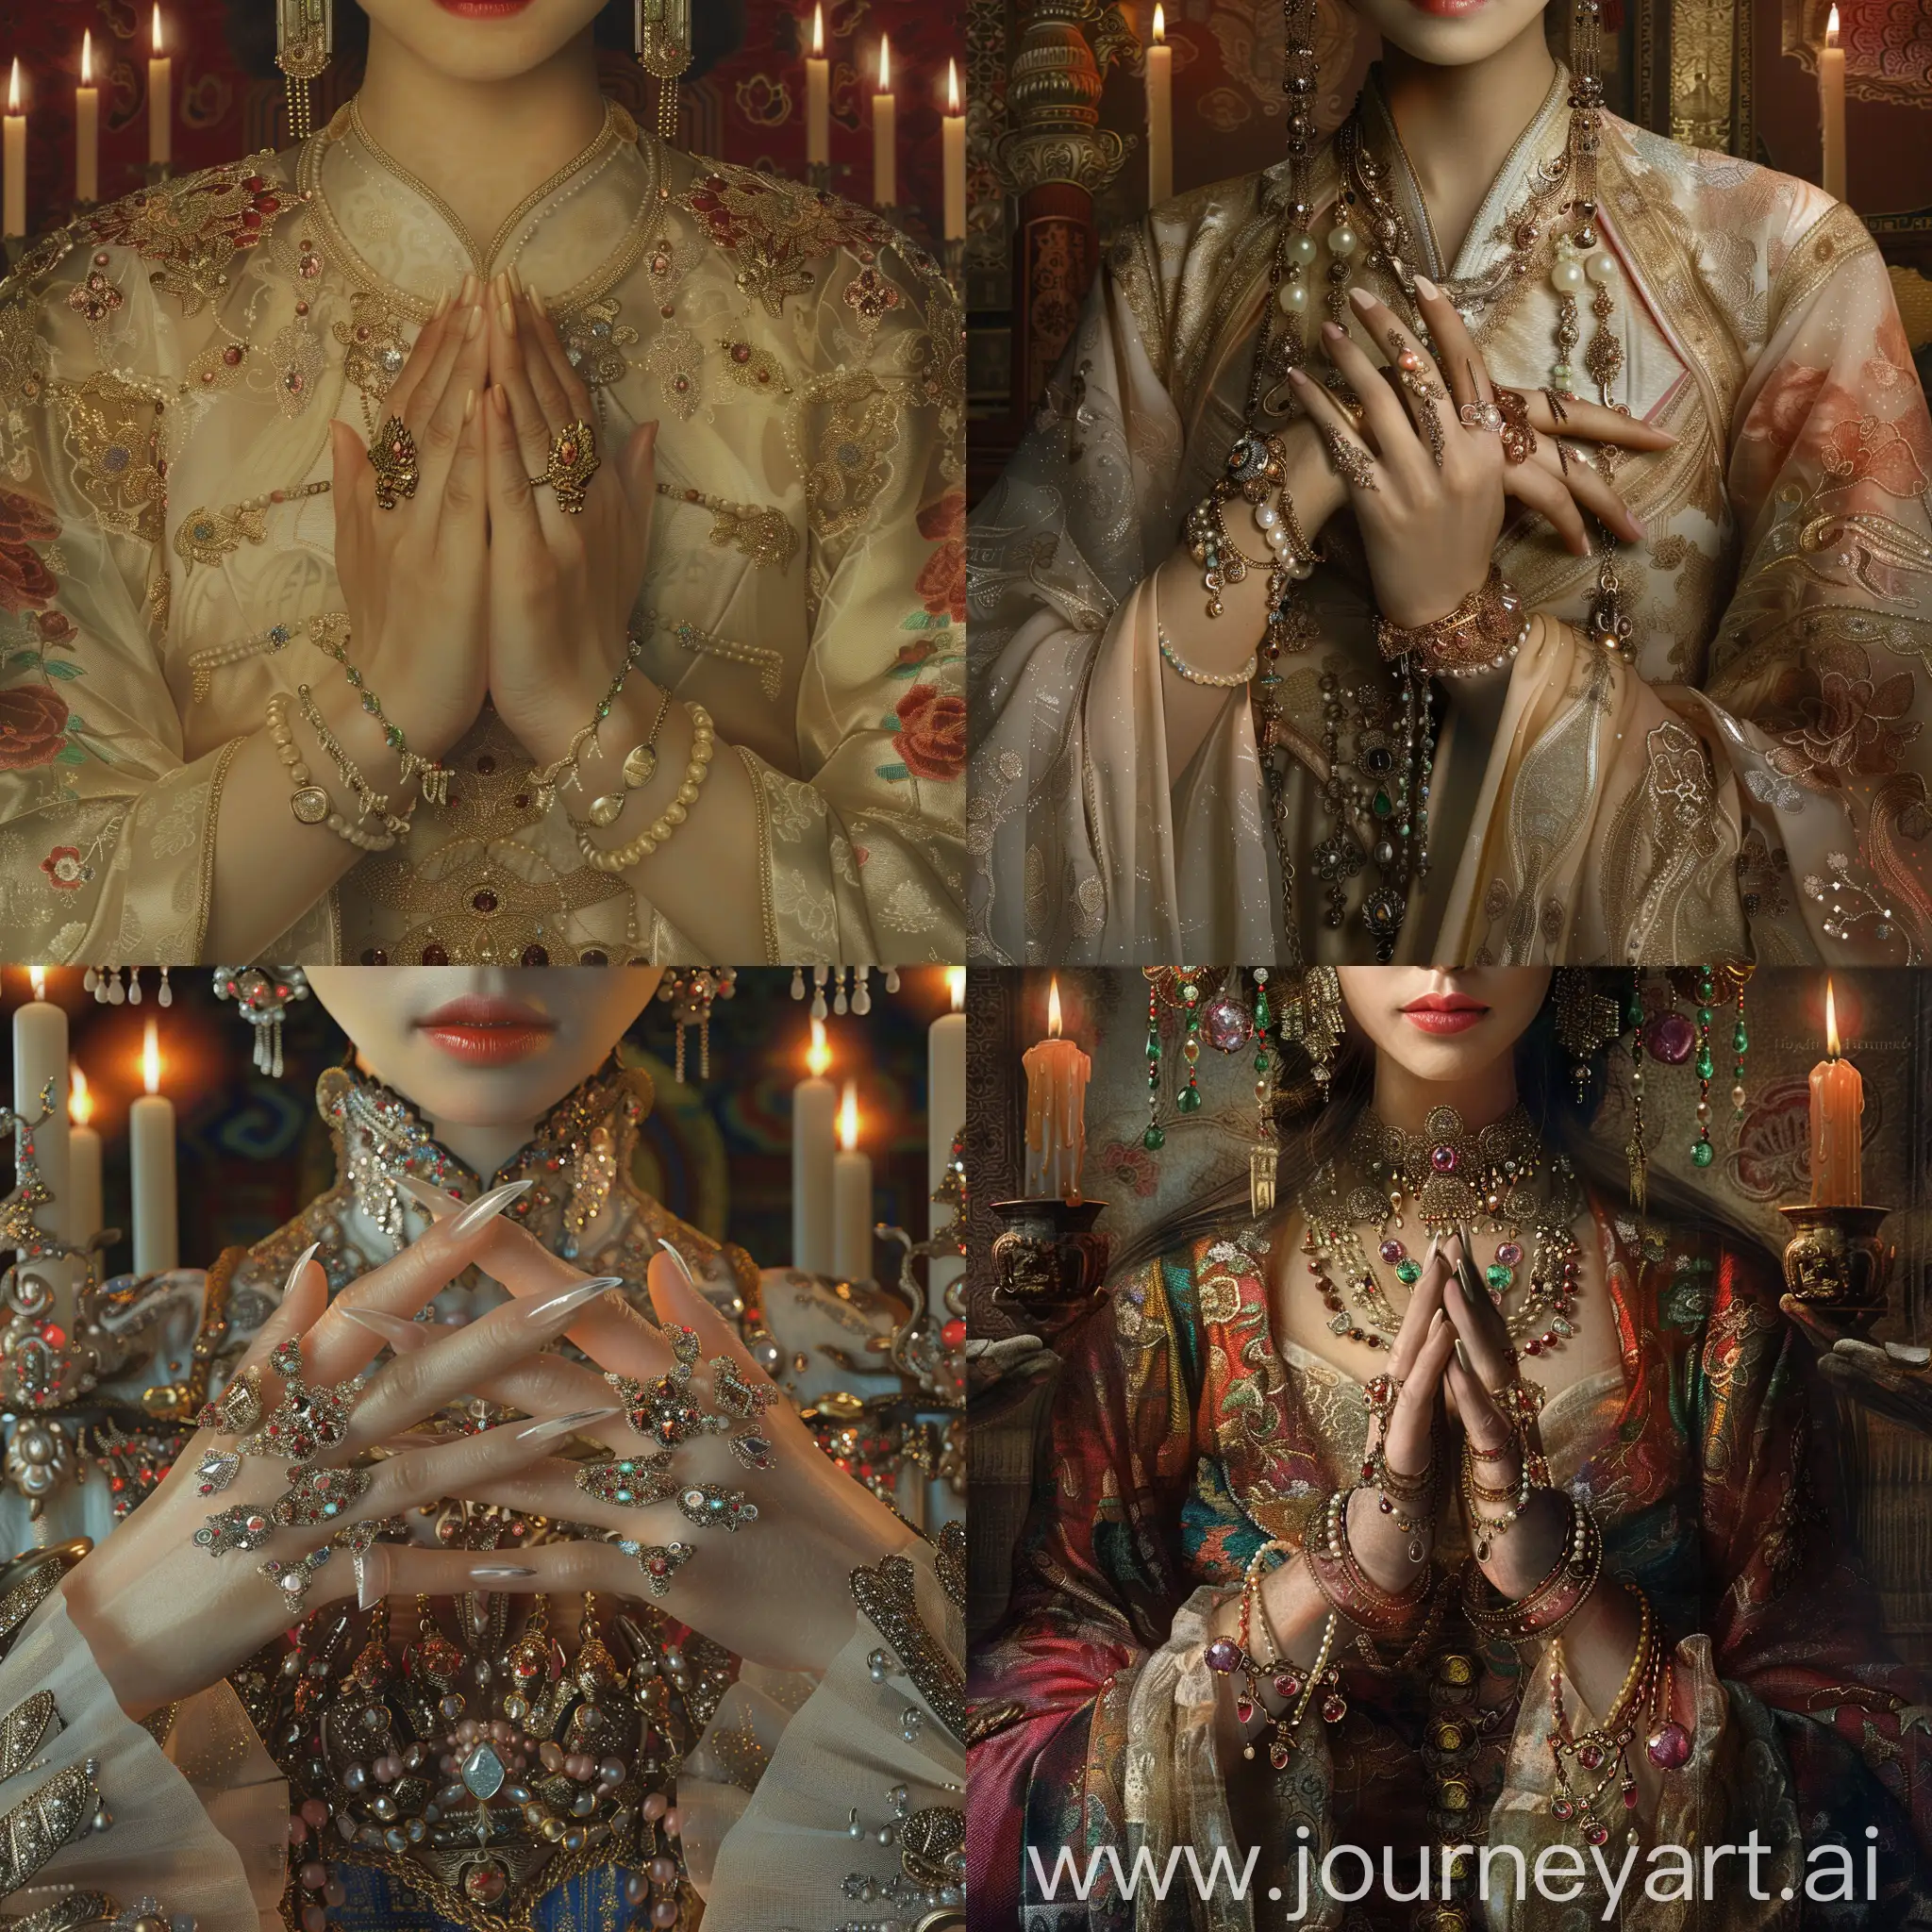 画一副中国女皇的图片，突出她的手，细腻白皙，佩戴着诸多珠宝，和长长的指甲套。  古代  细节丰富  烛光  全景图  旗袍 高清